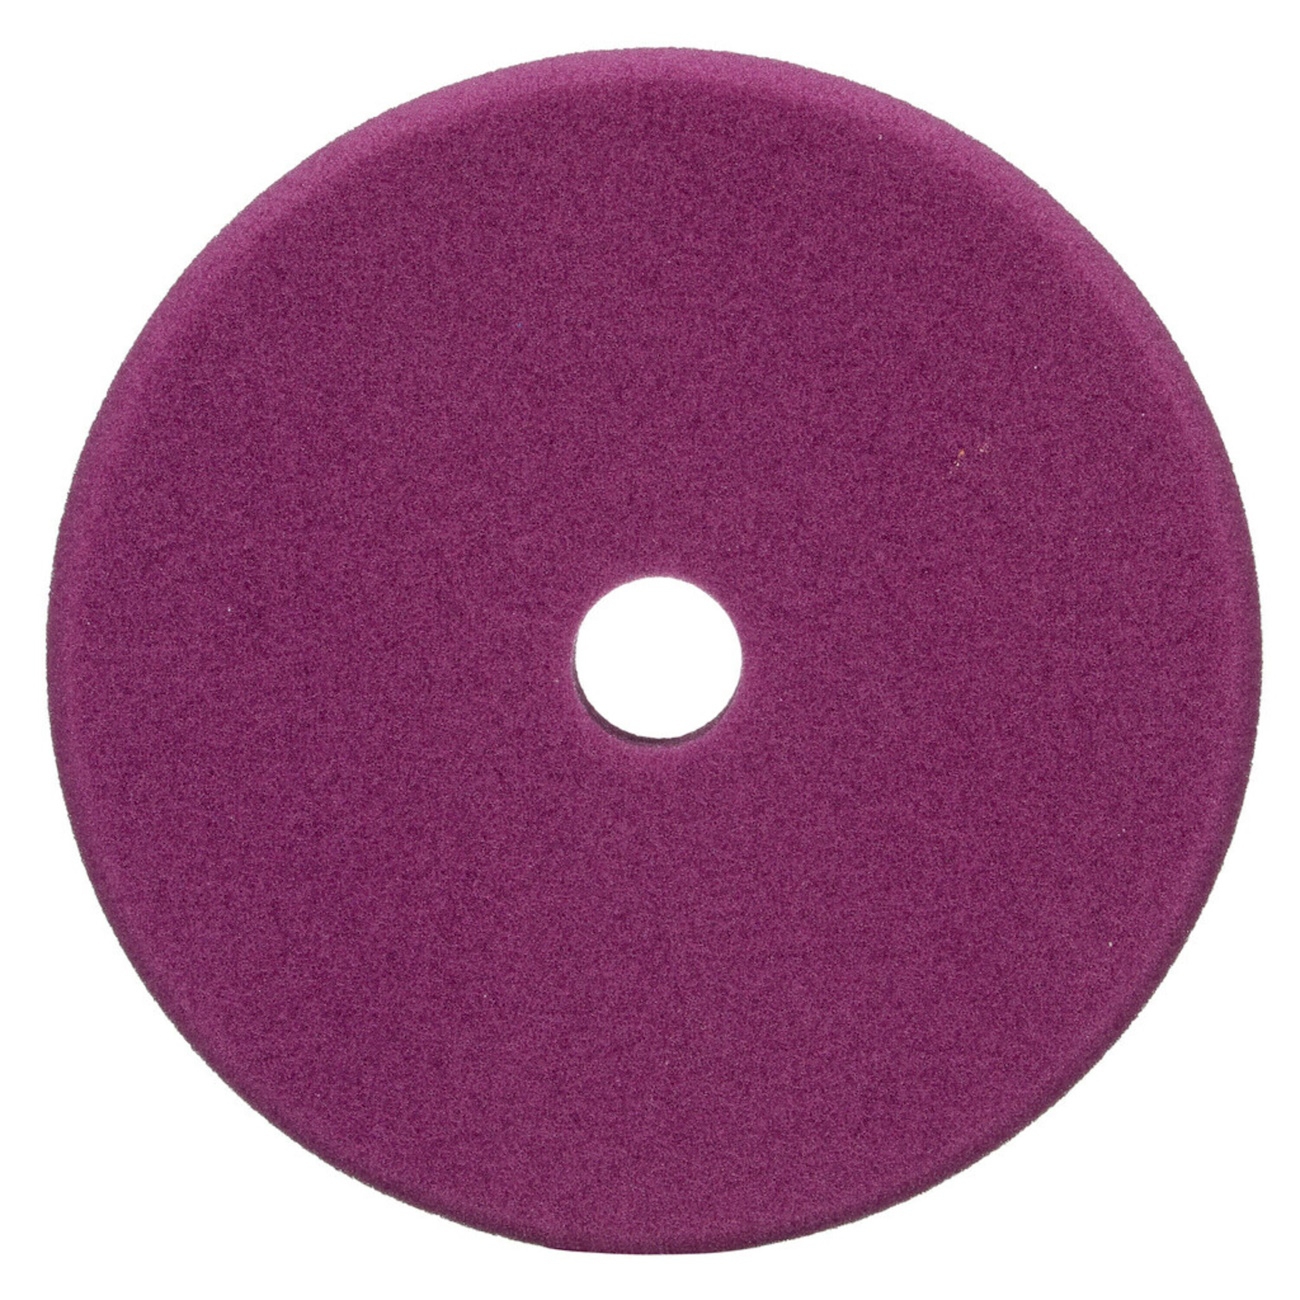 3M Perfect-It Almohadilla pulidora de espuma fina para pulidora excéntrica, violeta, 130 mm, 34123 (paquete=2 piezas)